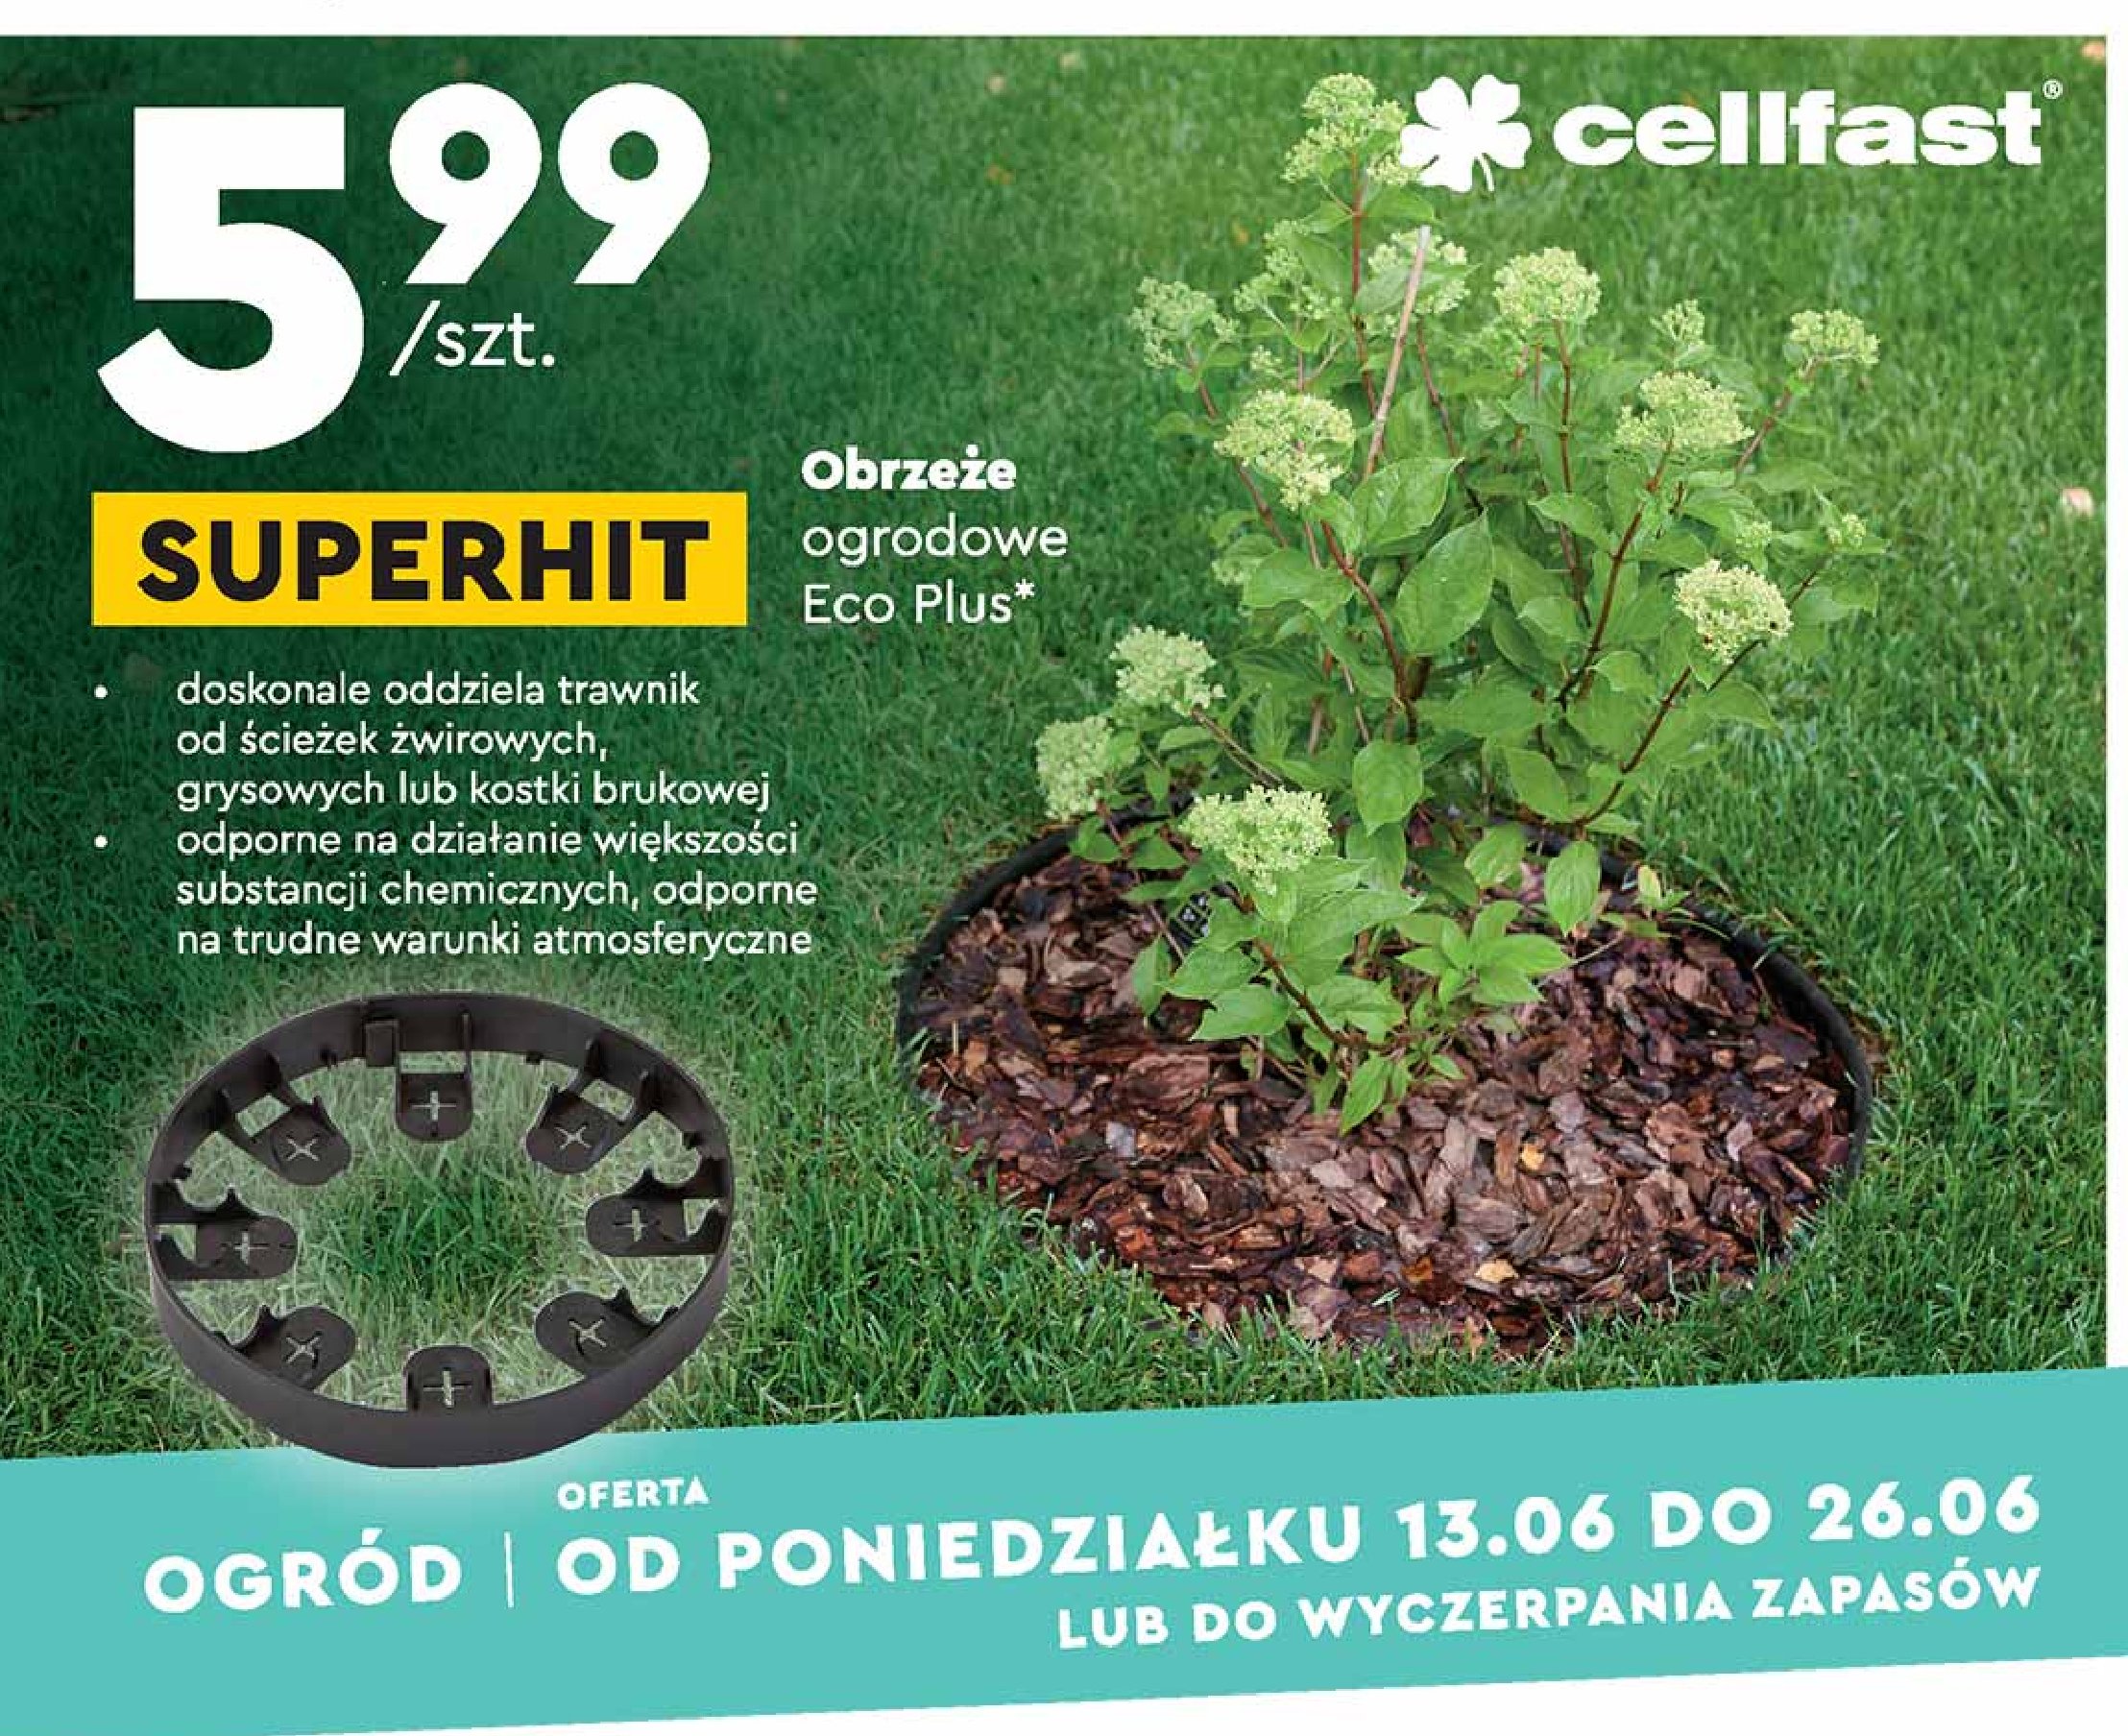 Obrzeże ogrodowe eco plus Cellfast promocja